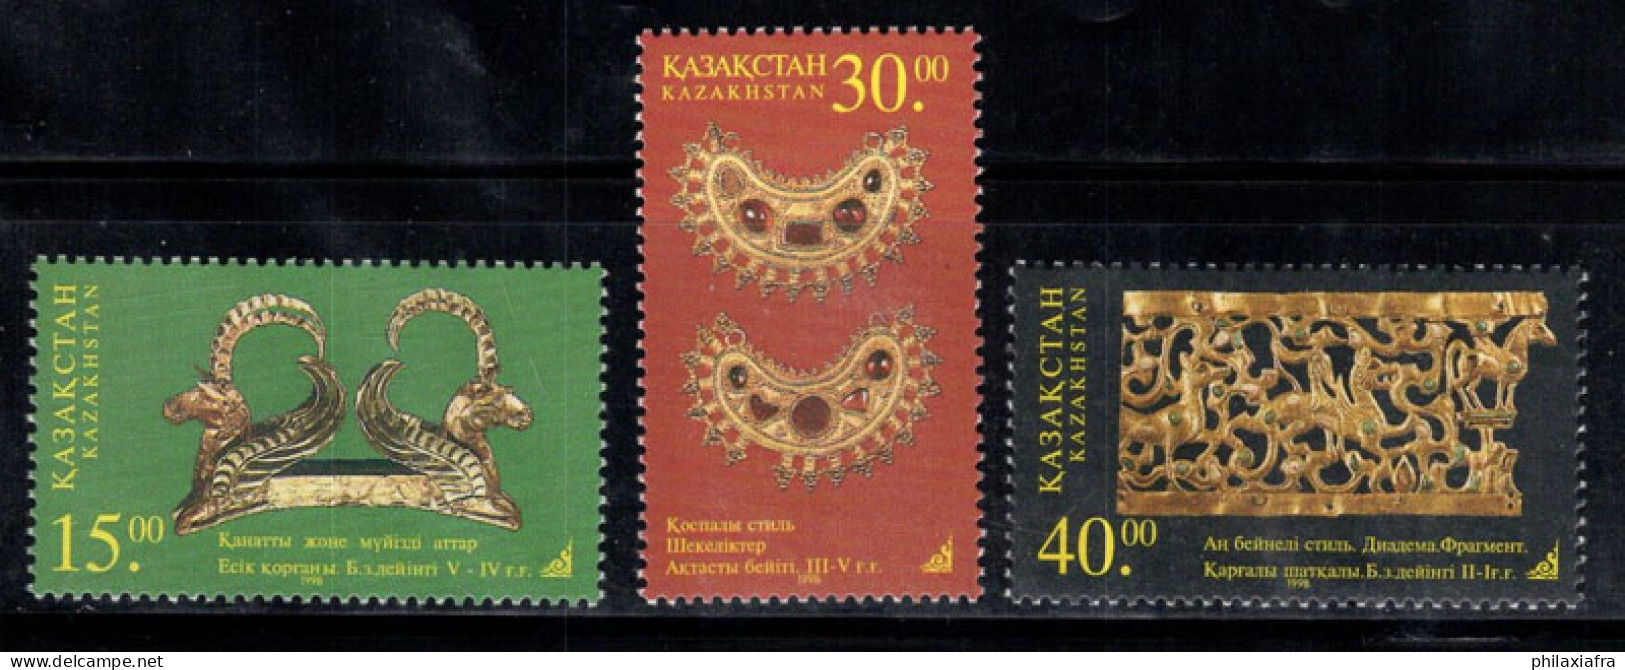 Kazakhstan 1998 Mi. 210-212 Neuf ** 100% Art, Or - Kazakhstan